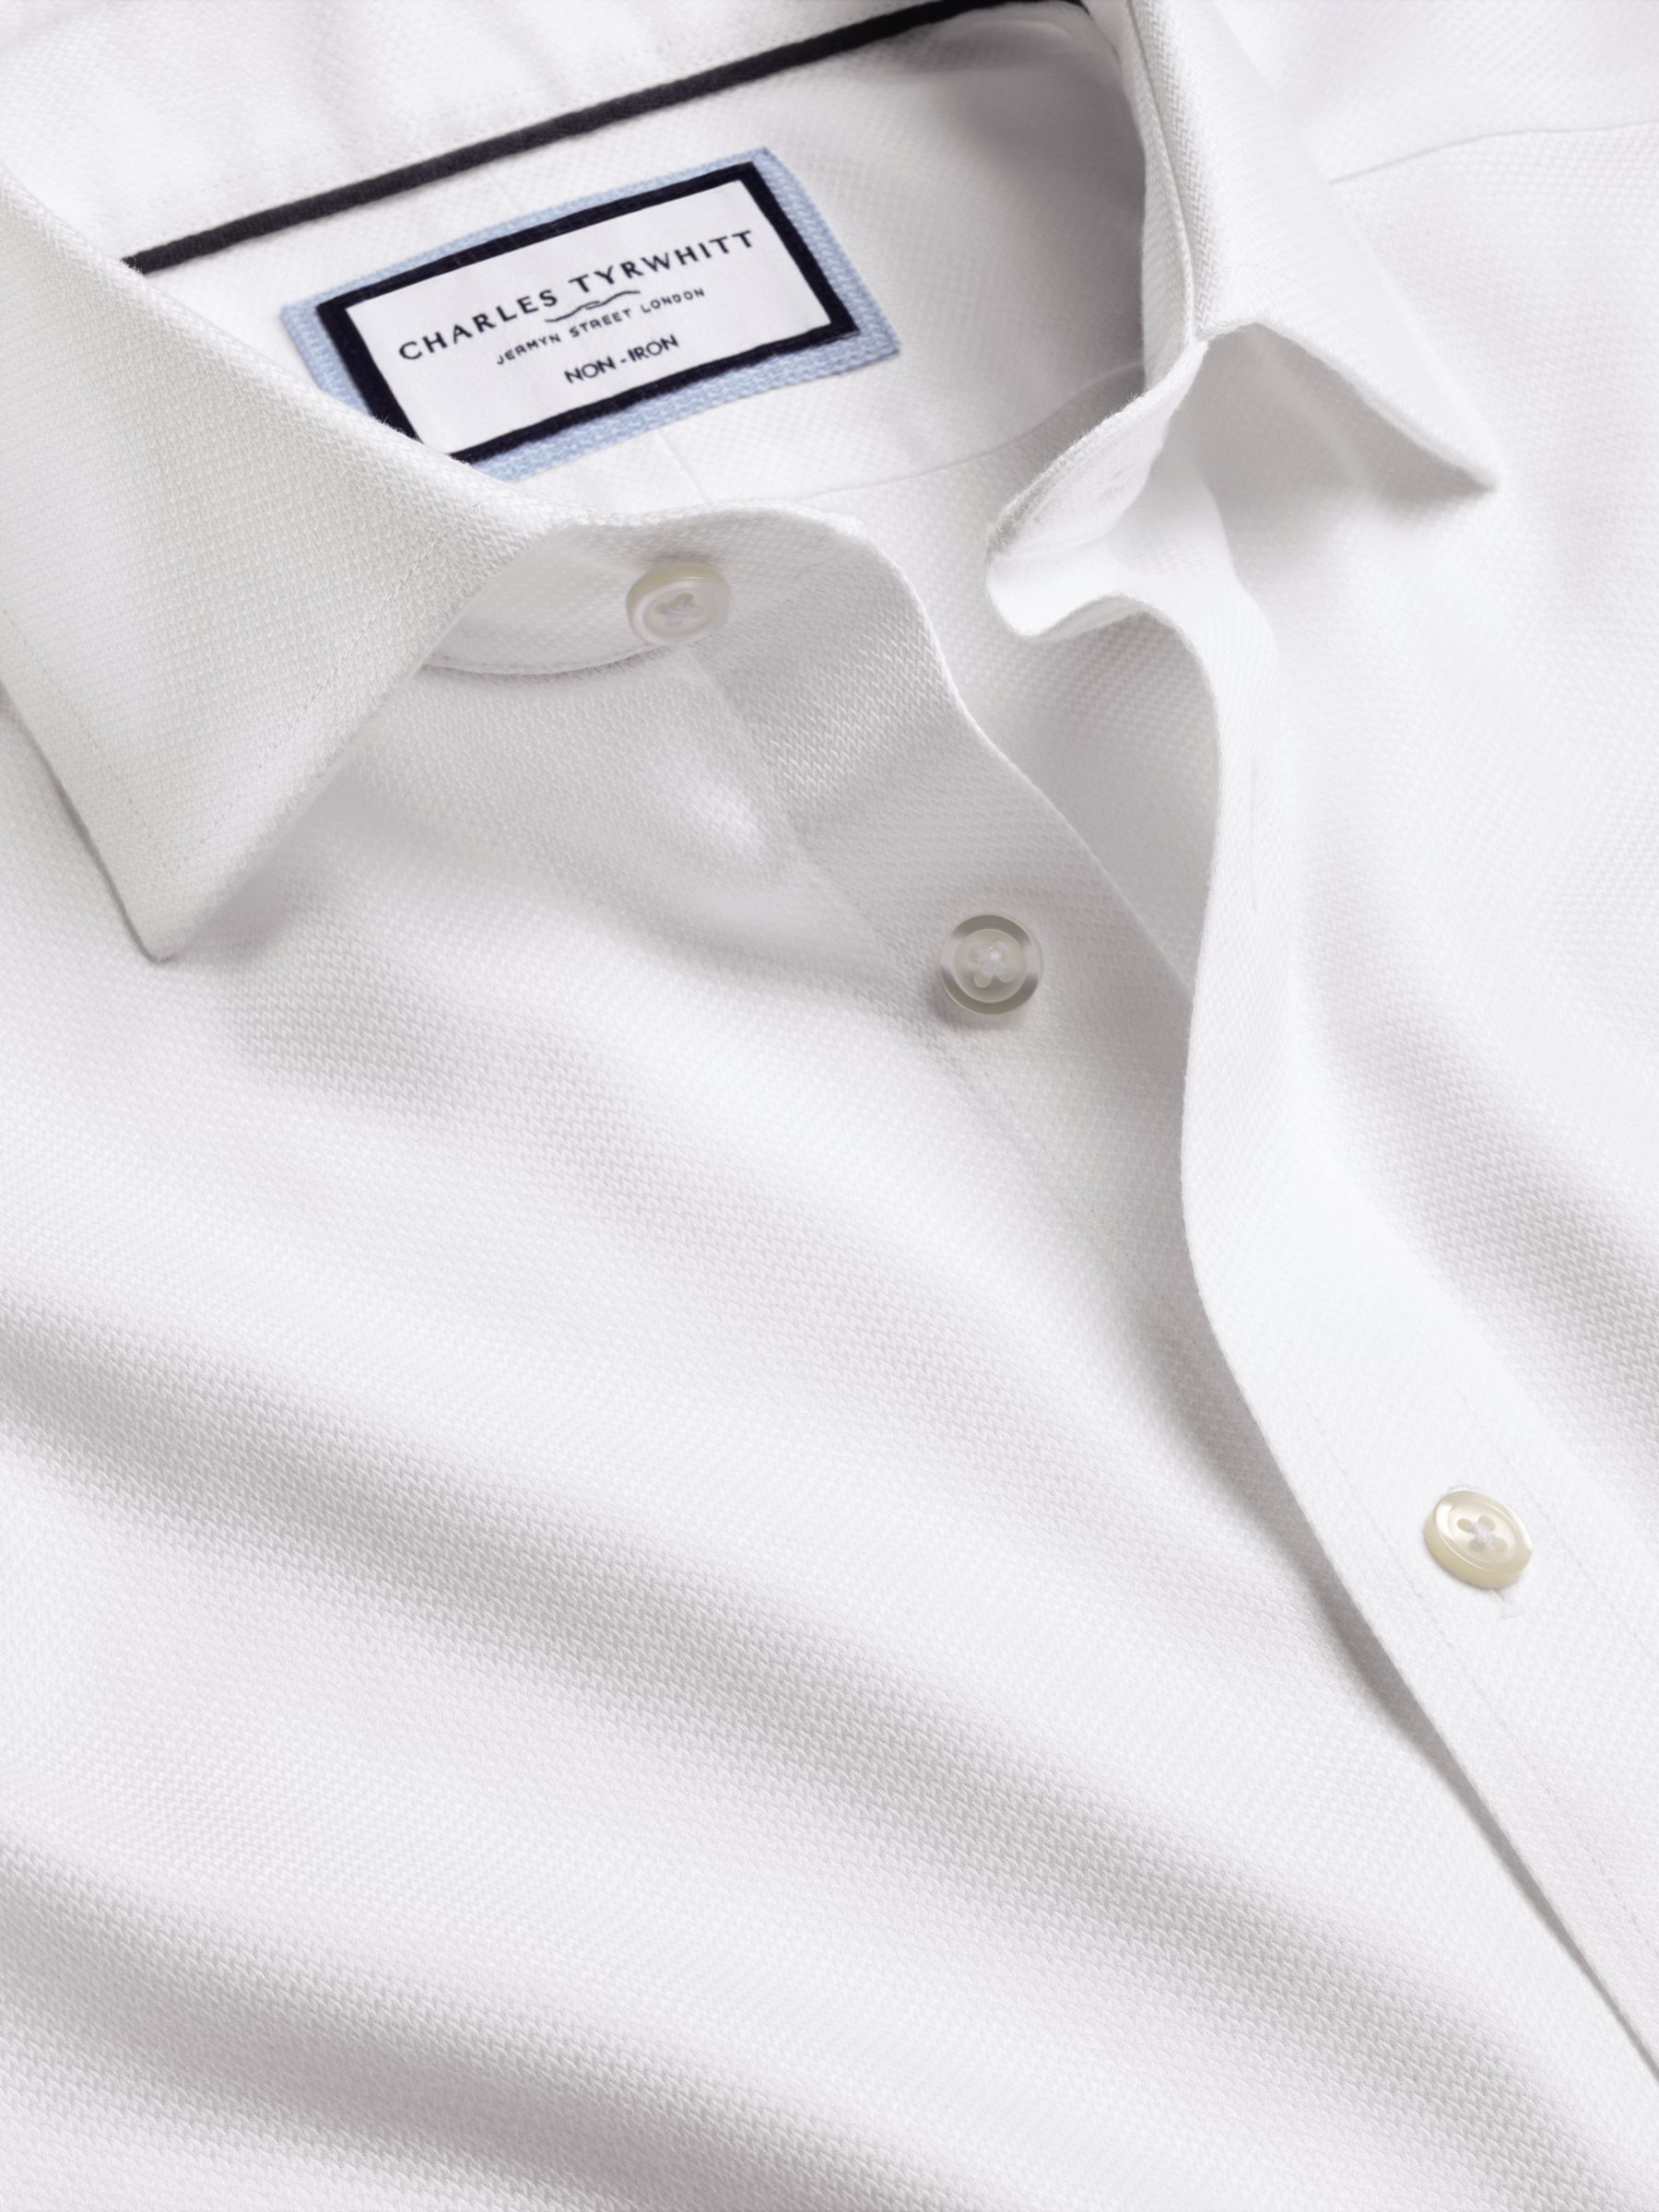 Charles Tyrwhitt Non-Iron Mayfair Textured Dobby Weave Shirt, White, 14.5